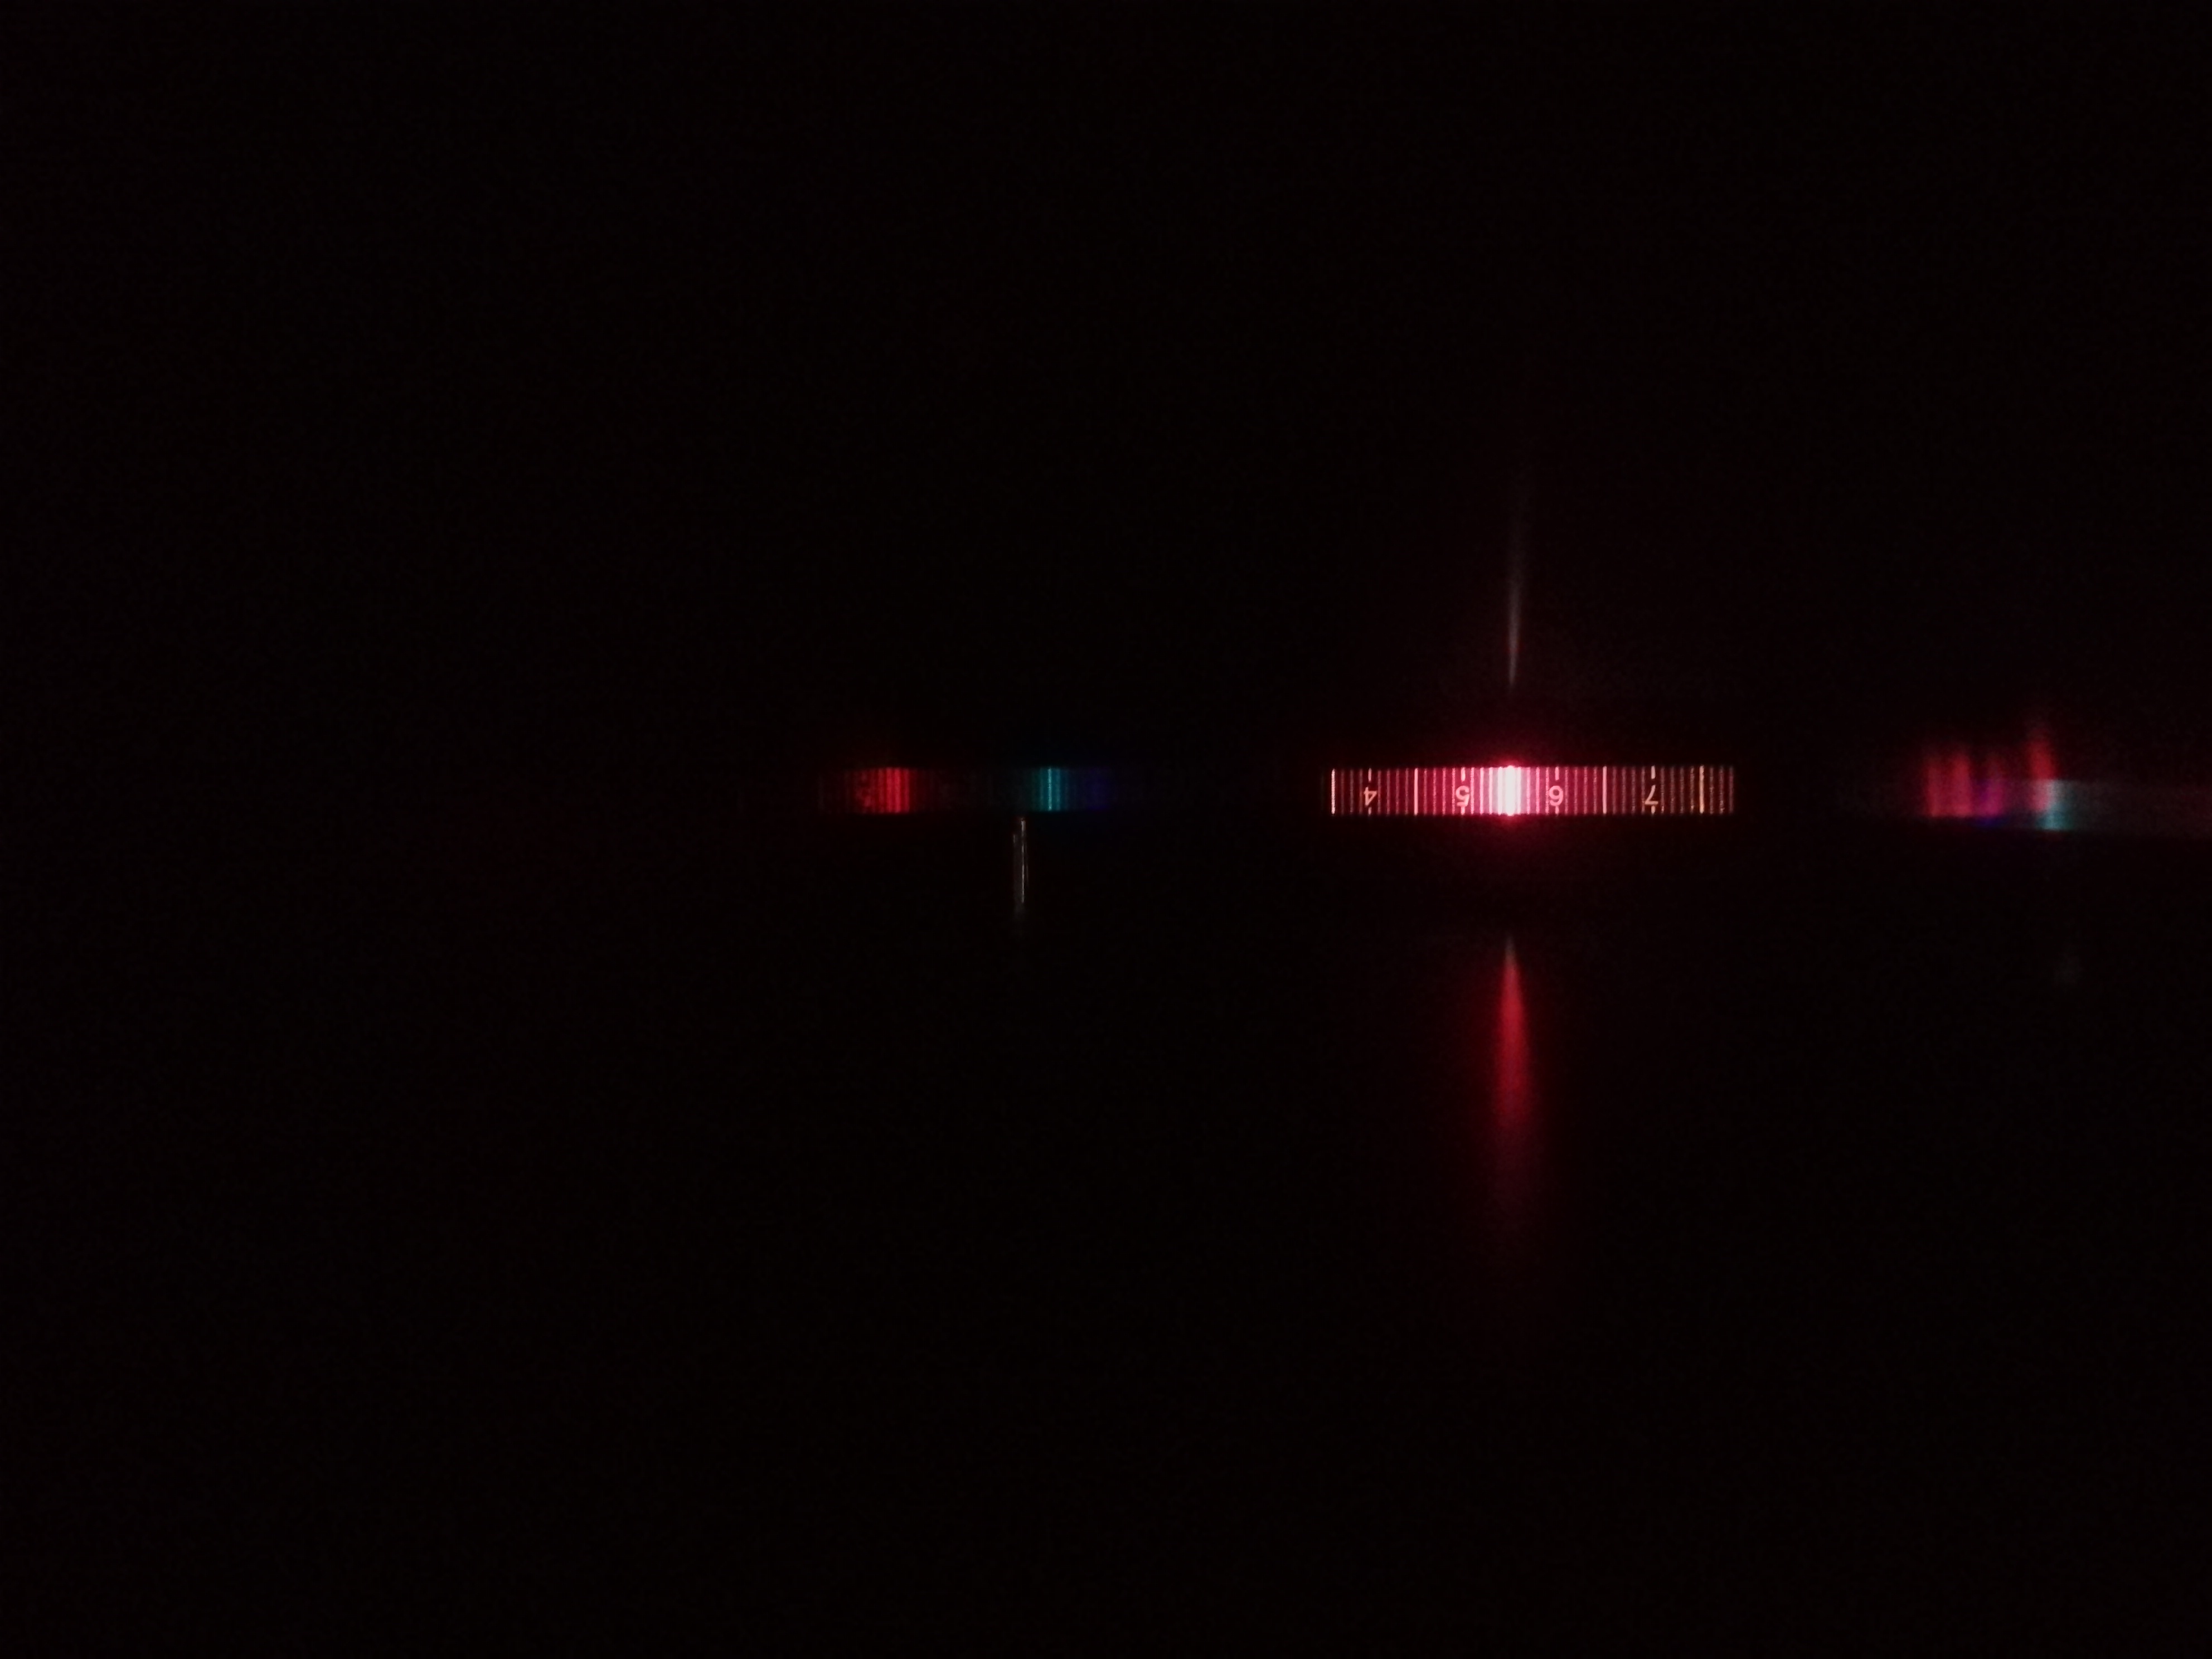 Emission Spectrum